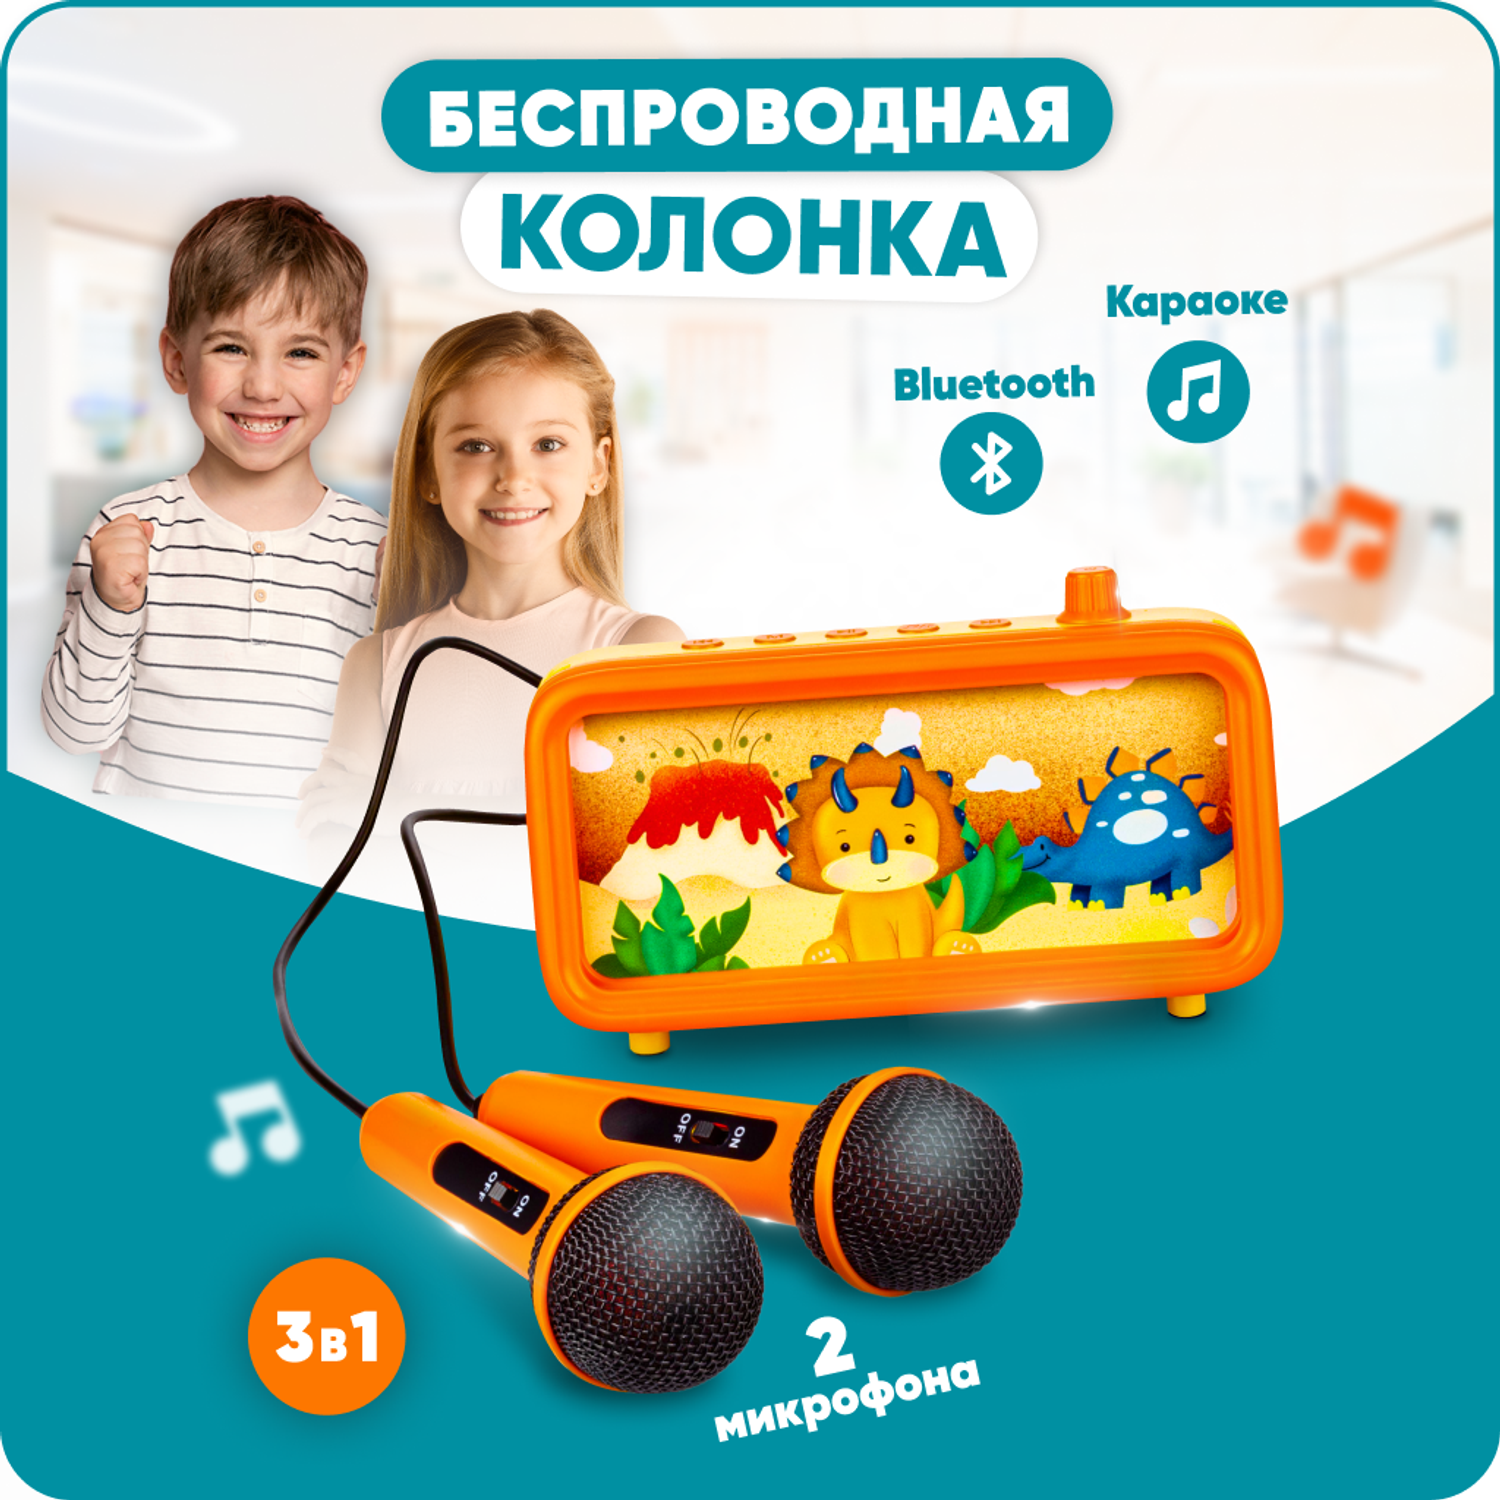 Караоке-пенал для детей Solmax с микрофоном и колонкой Bluetooth оранжевый - фото 1